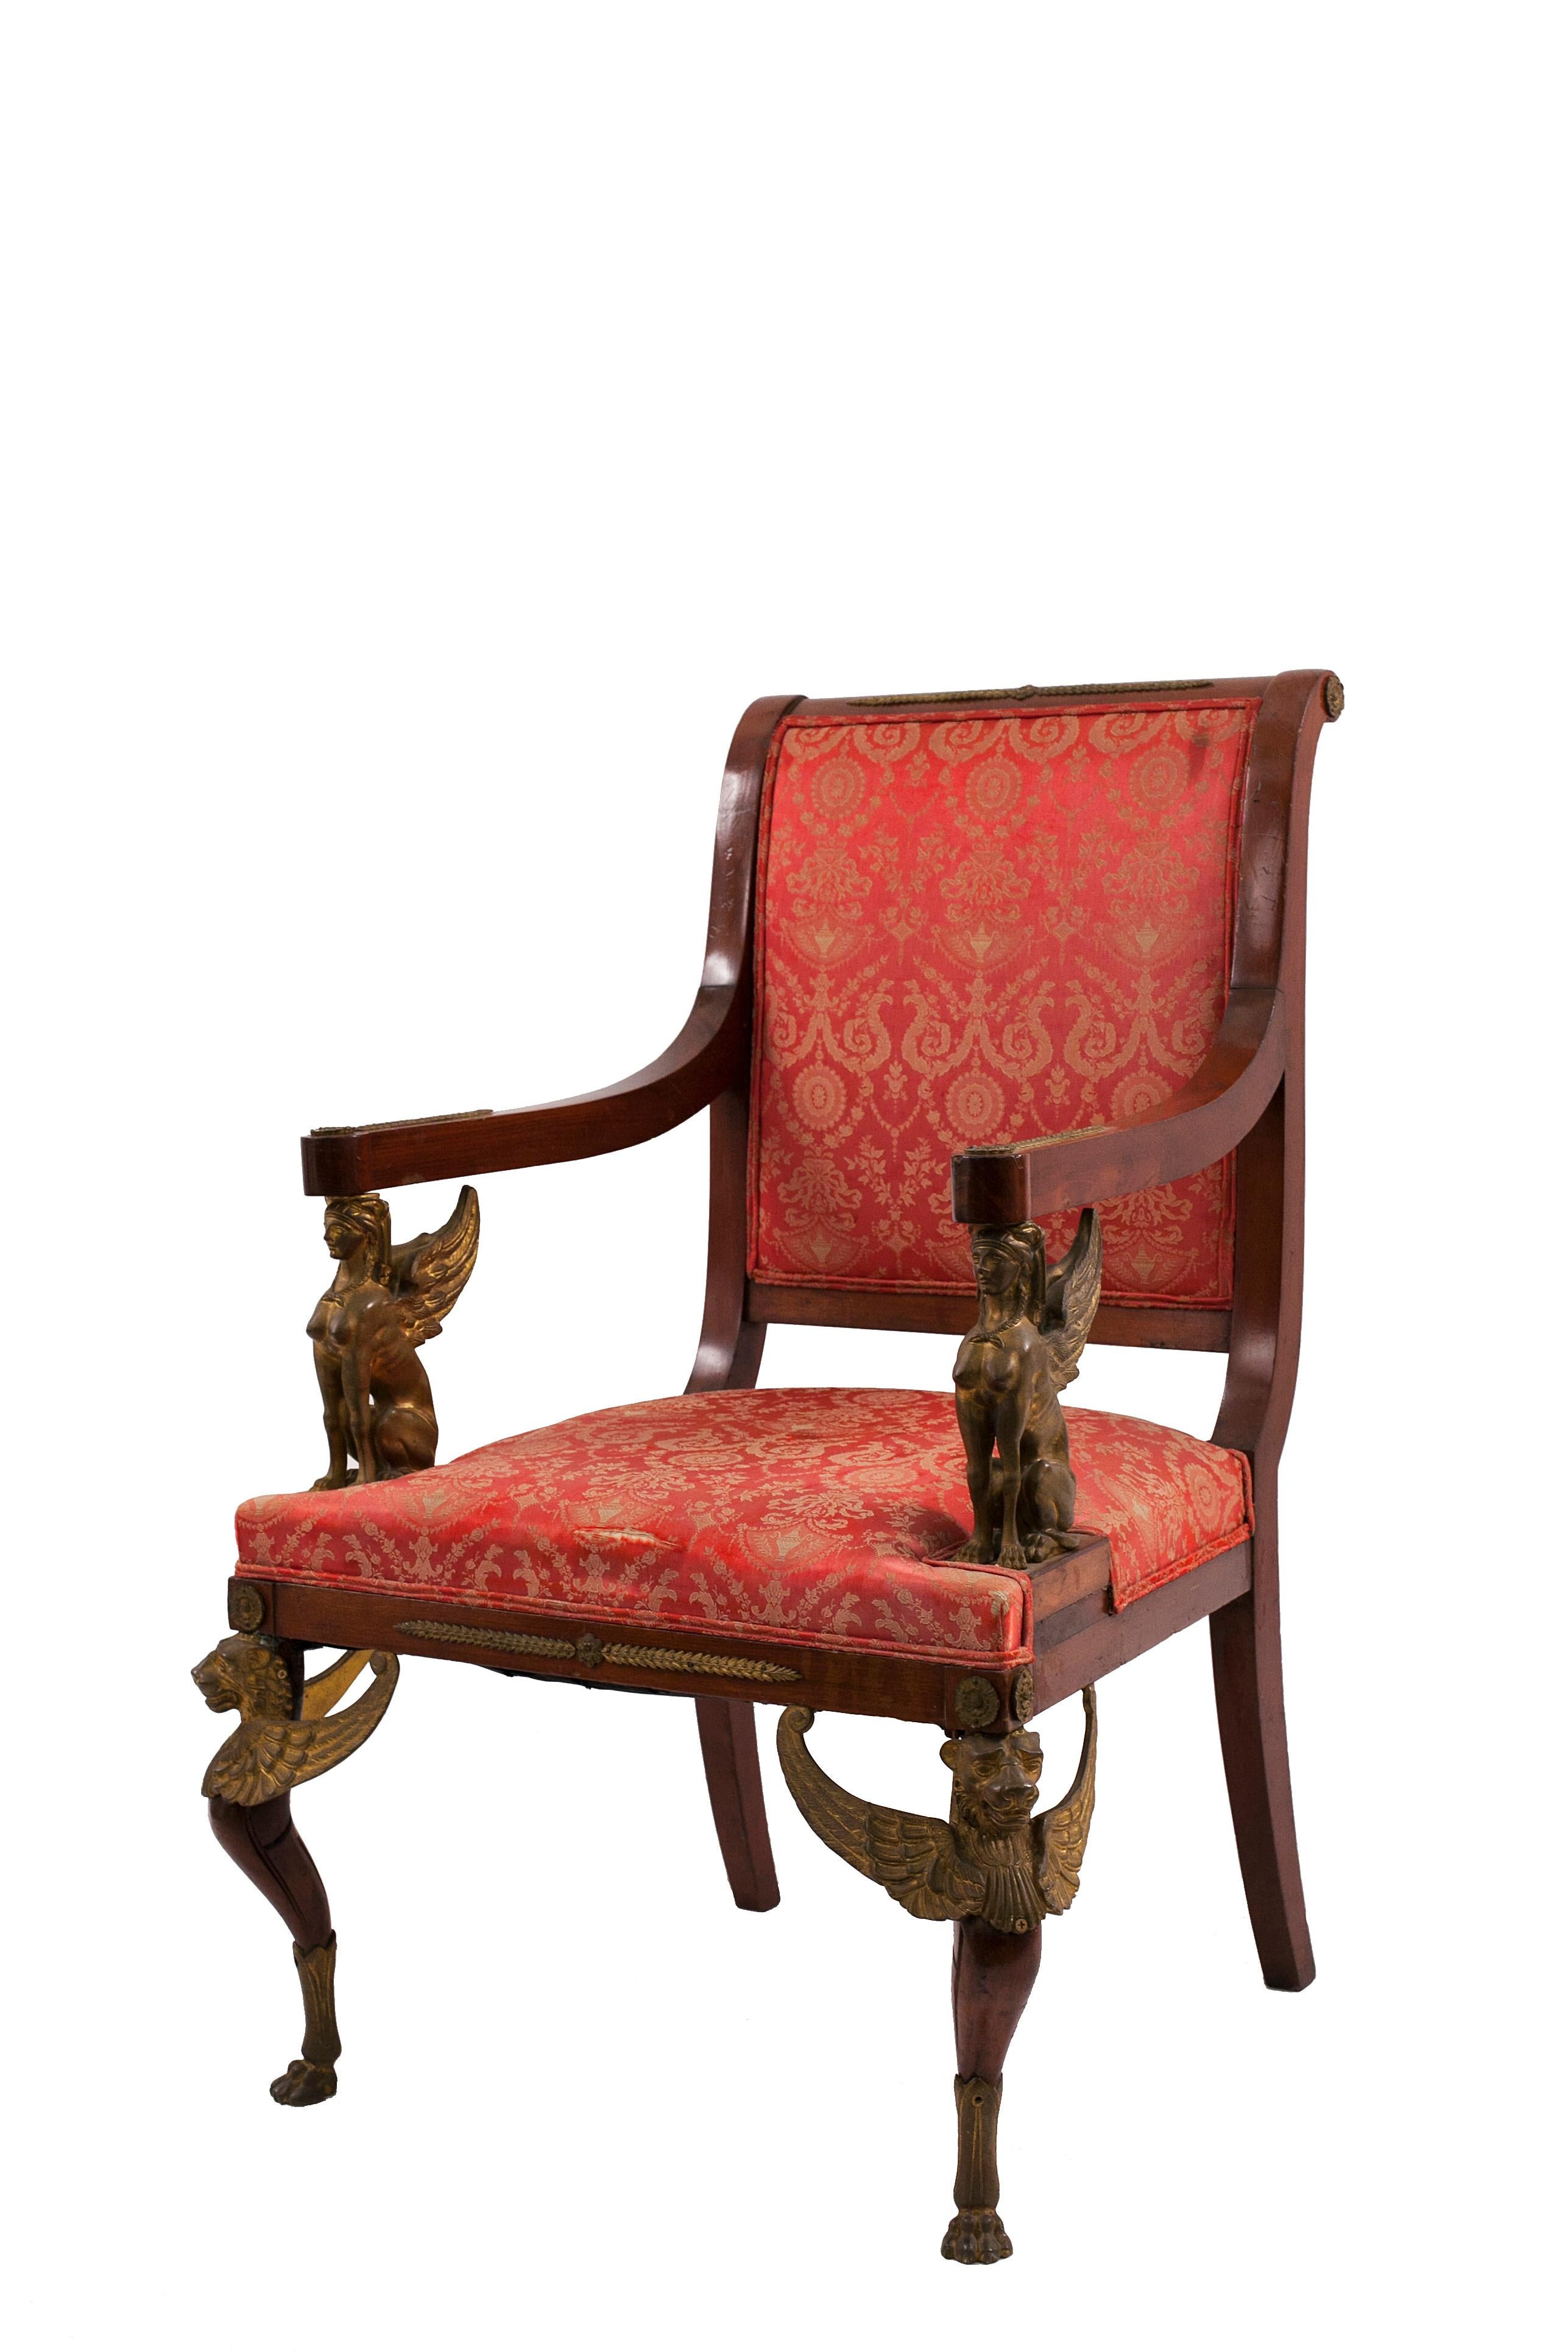 Ensemble de 5 meubles de salon ou de salle à manger en acajou de style Empire français (19e siècle) avec garnitures en bronze et tapisserie en damas rouge. 

Mesures :

2 bras 27½